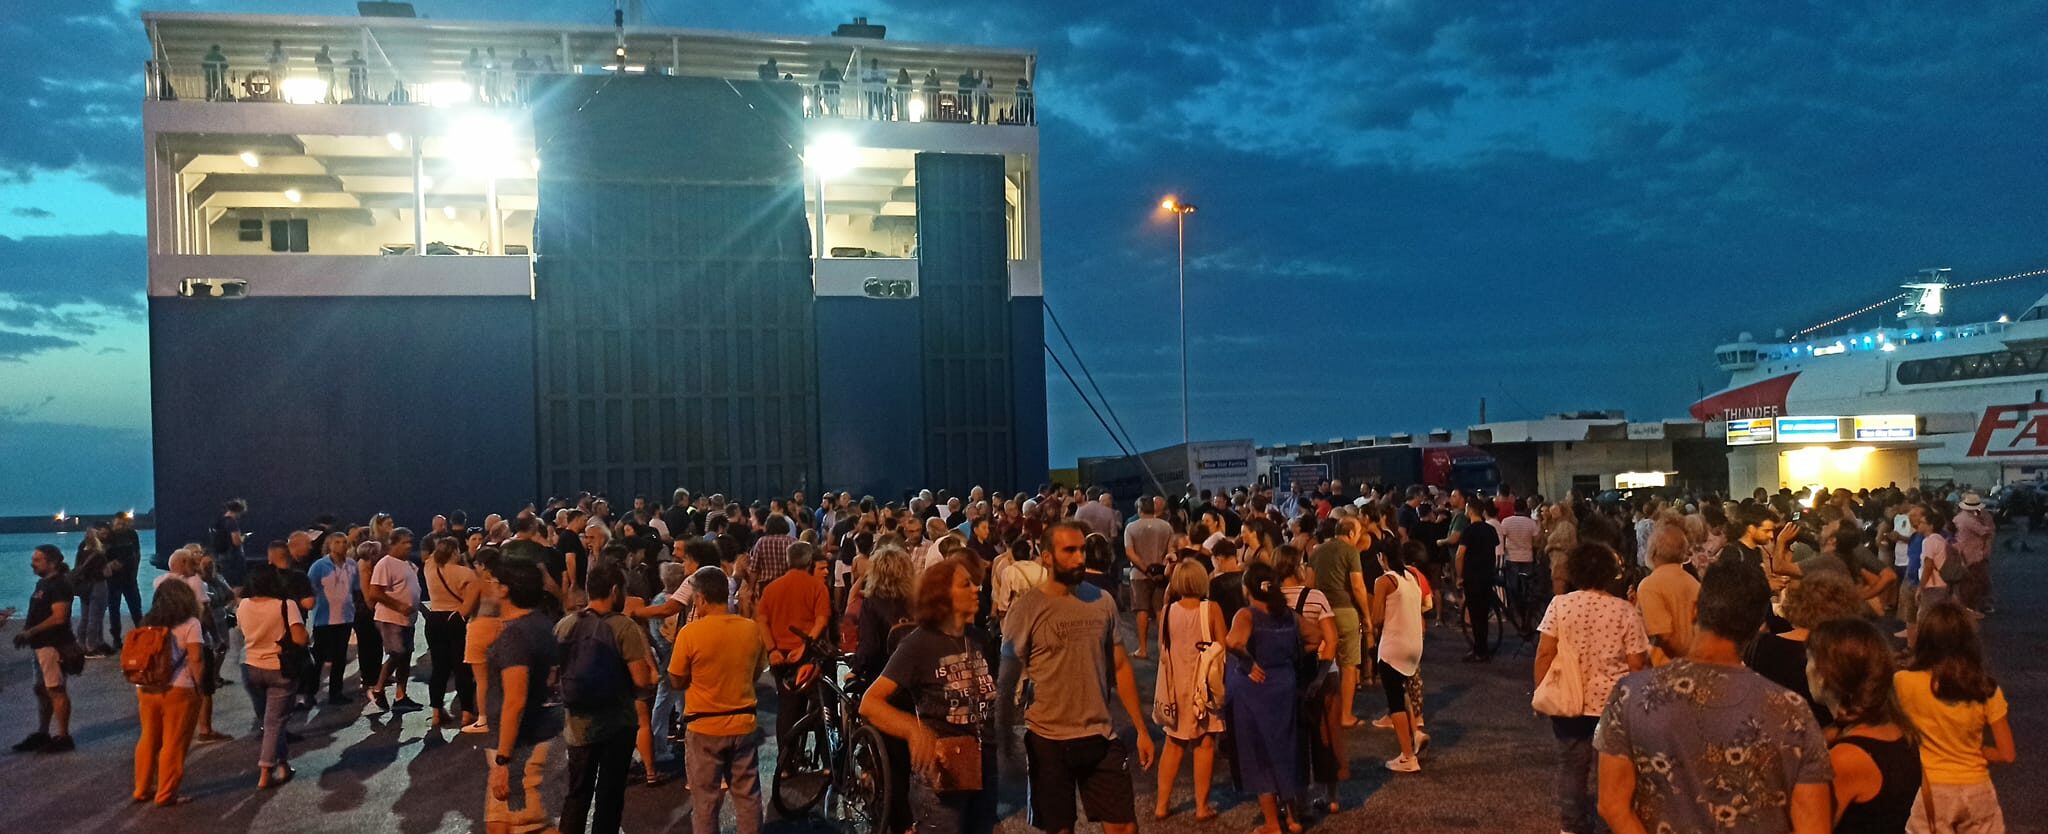 Blue Horizon: Μεγάλη κινητοποίηση στο λιμάνι του Ηρακλείου για τον αδικοχαμένο Αντώνη - "Δολοφόνοι" φώναζαν (βίντεο)